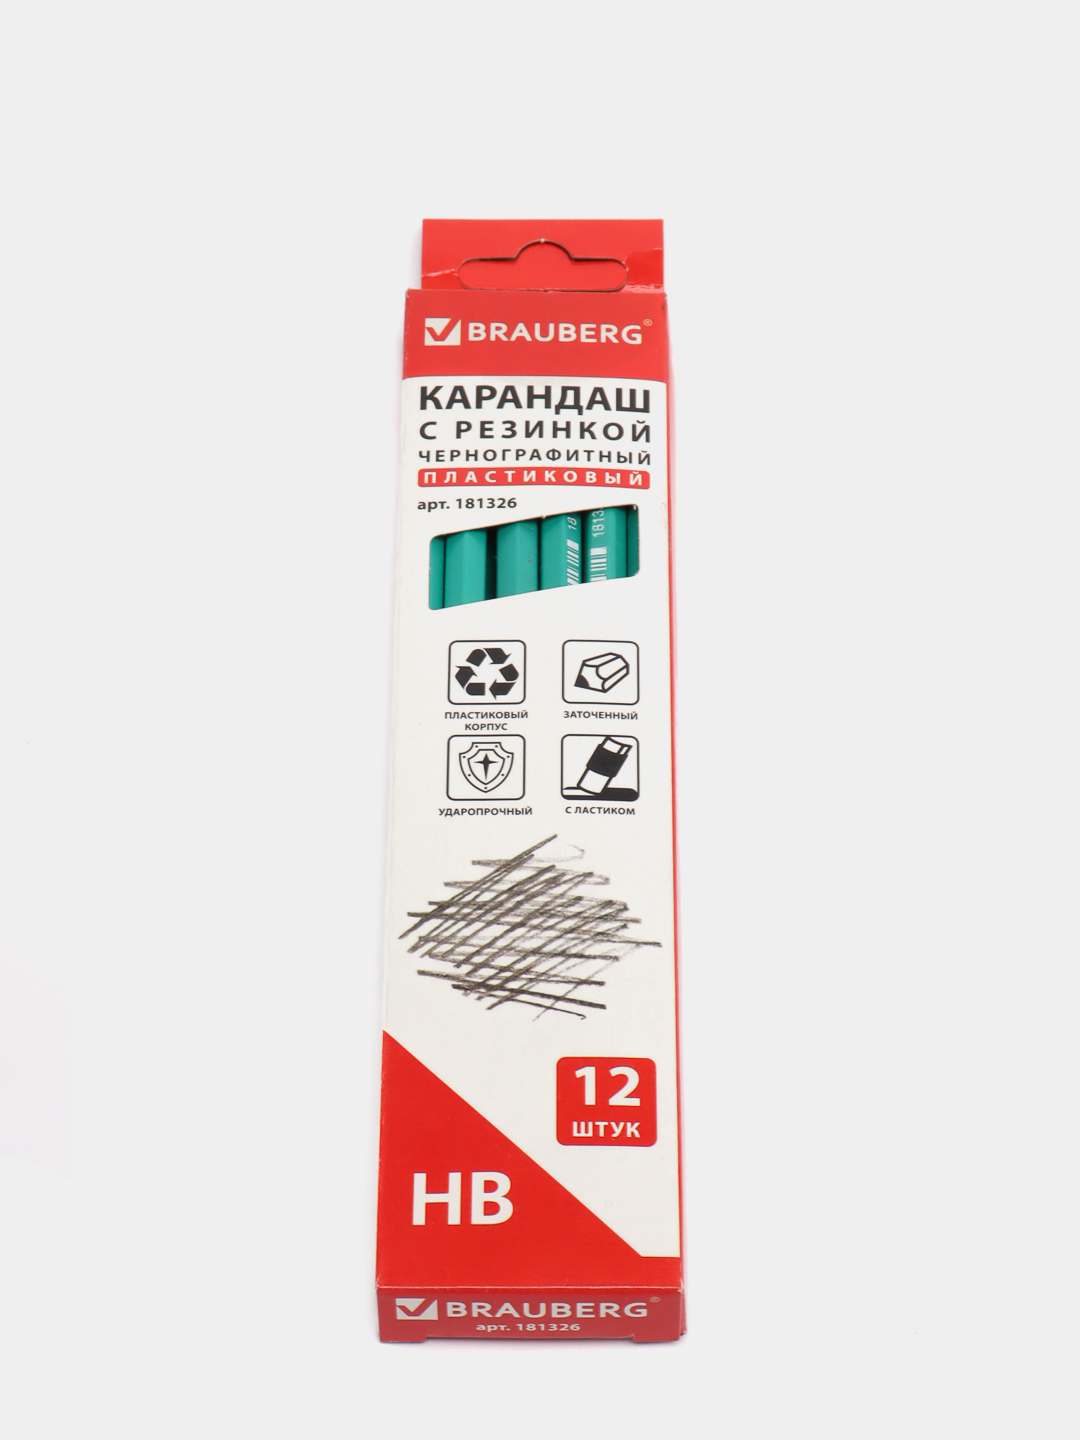 Простой карандаш  по цене 45 ₽ в е KazanExpress